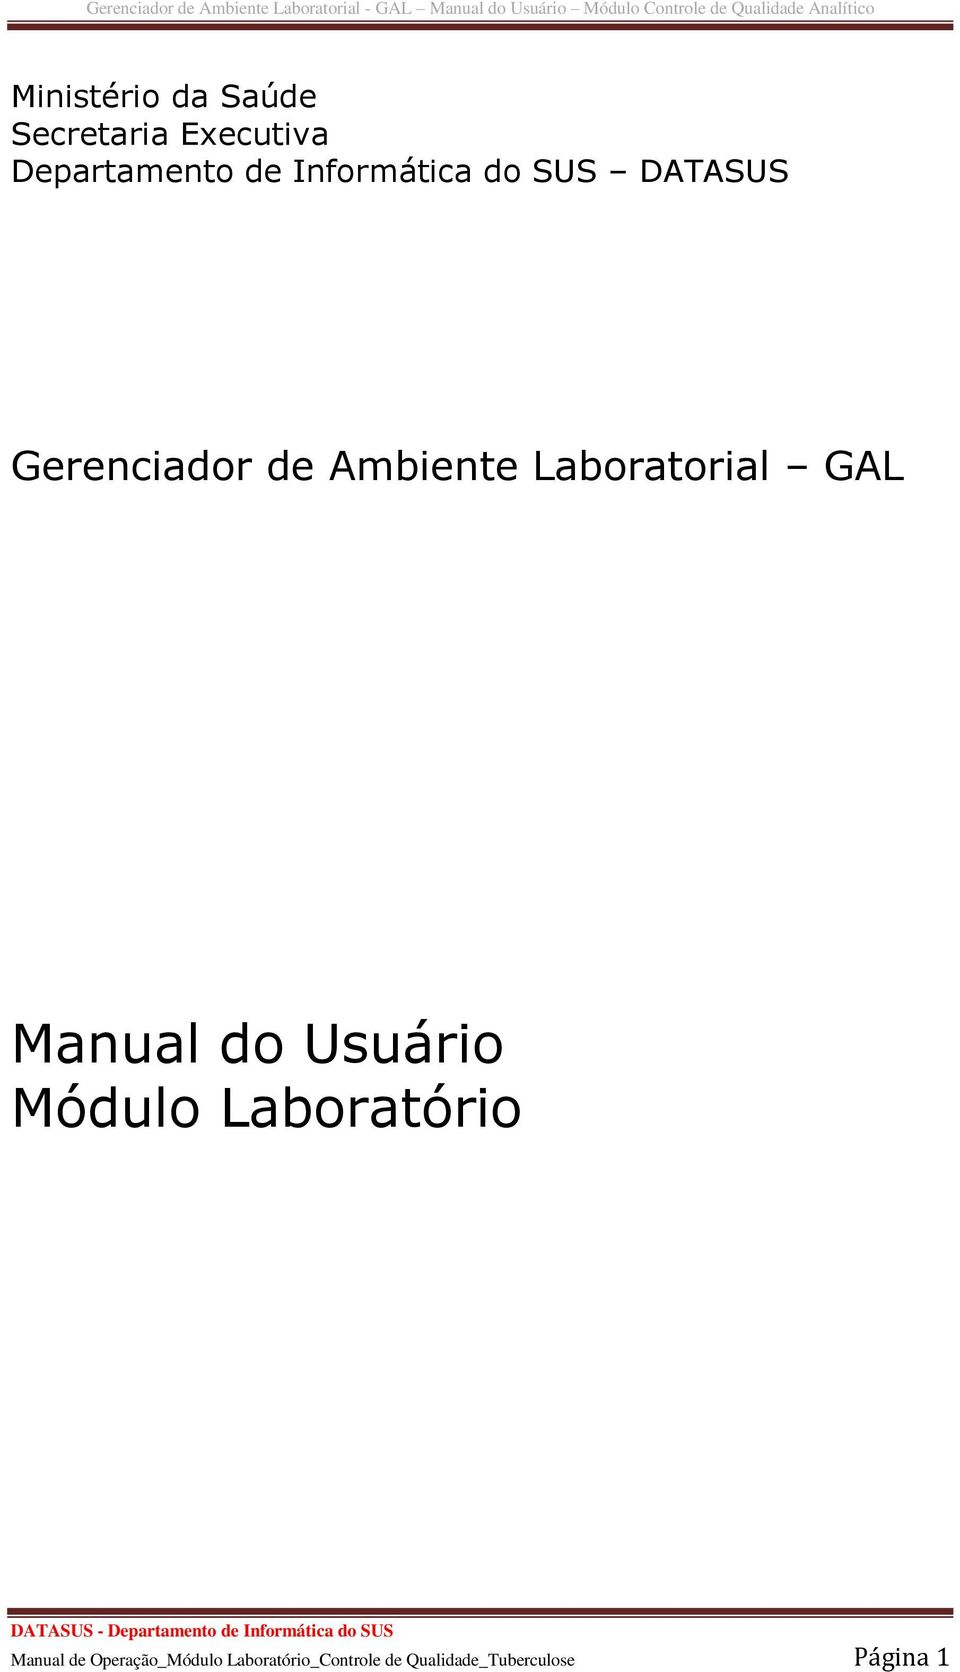 Gerenciador de Ambiente Laboratorial - GAL Manual do Usuário Módulo  Controle de Qualidade Analítico - PDF Download grátis